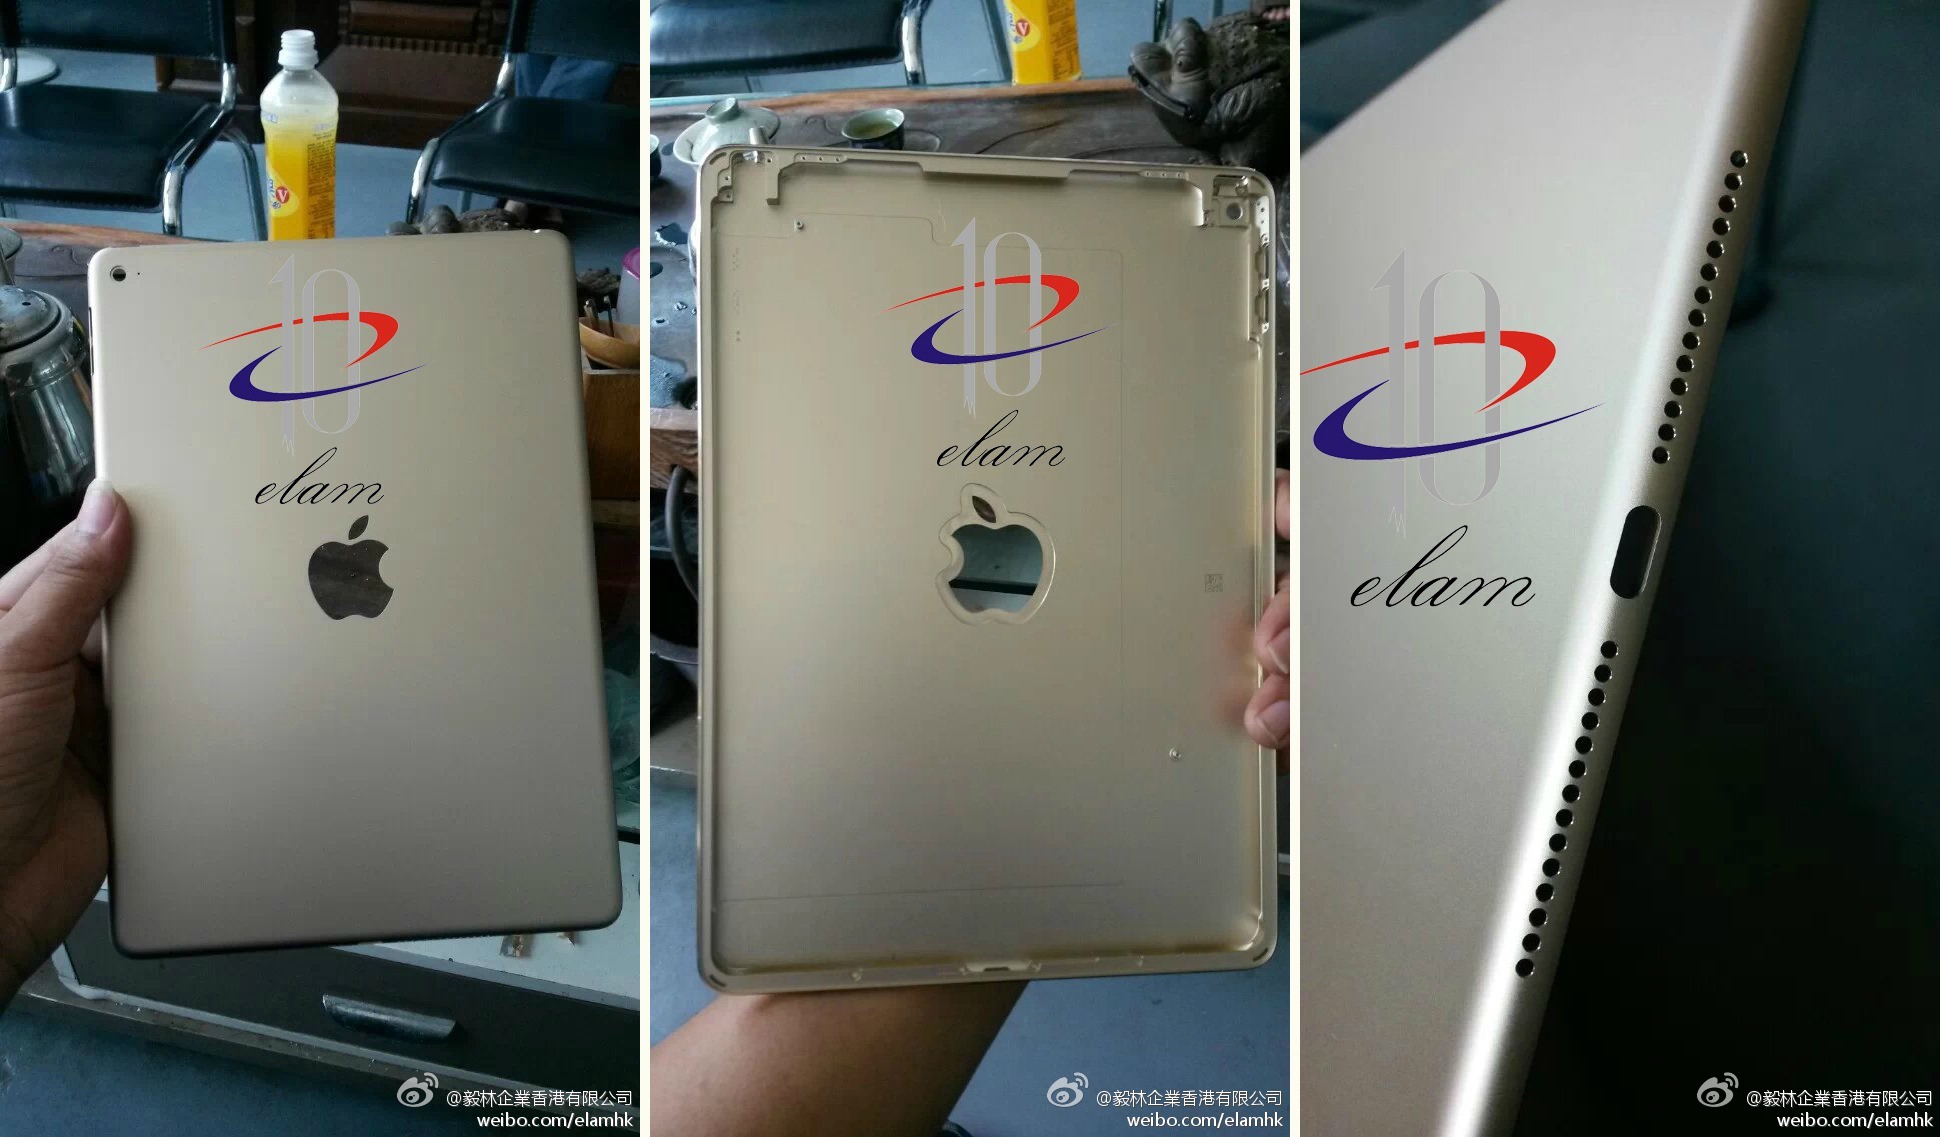 ภาพหลุดชิ้นส่วนฝาหลัง iPad Air 2 โดนเจาะโลโก้ Apple เรียบร้อยแล้ว